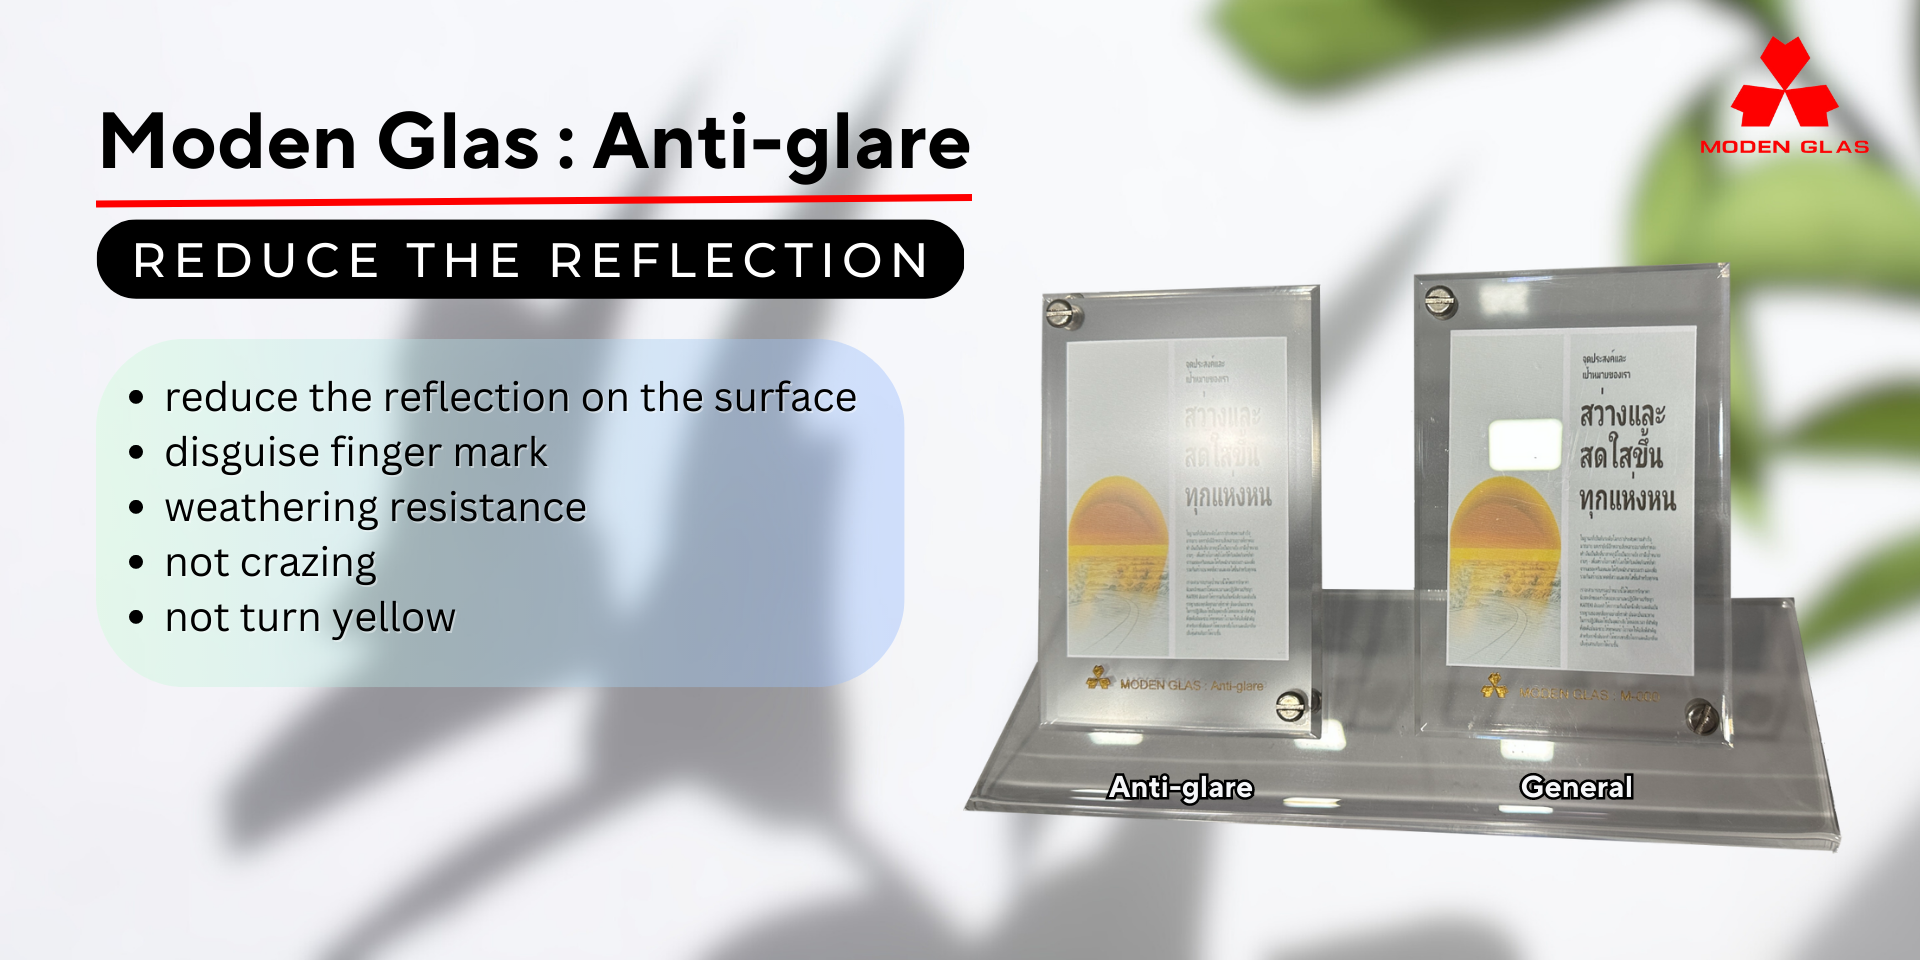  Moden Glas : Anti-glare